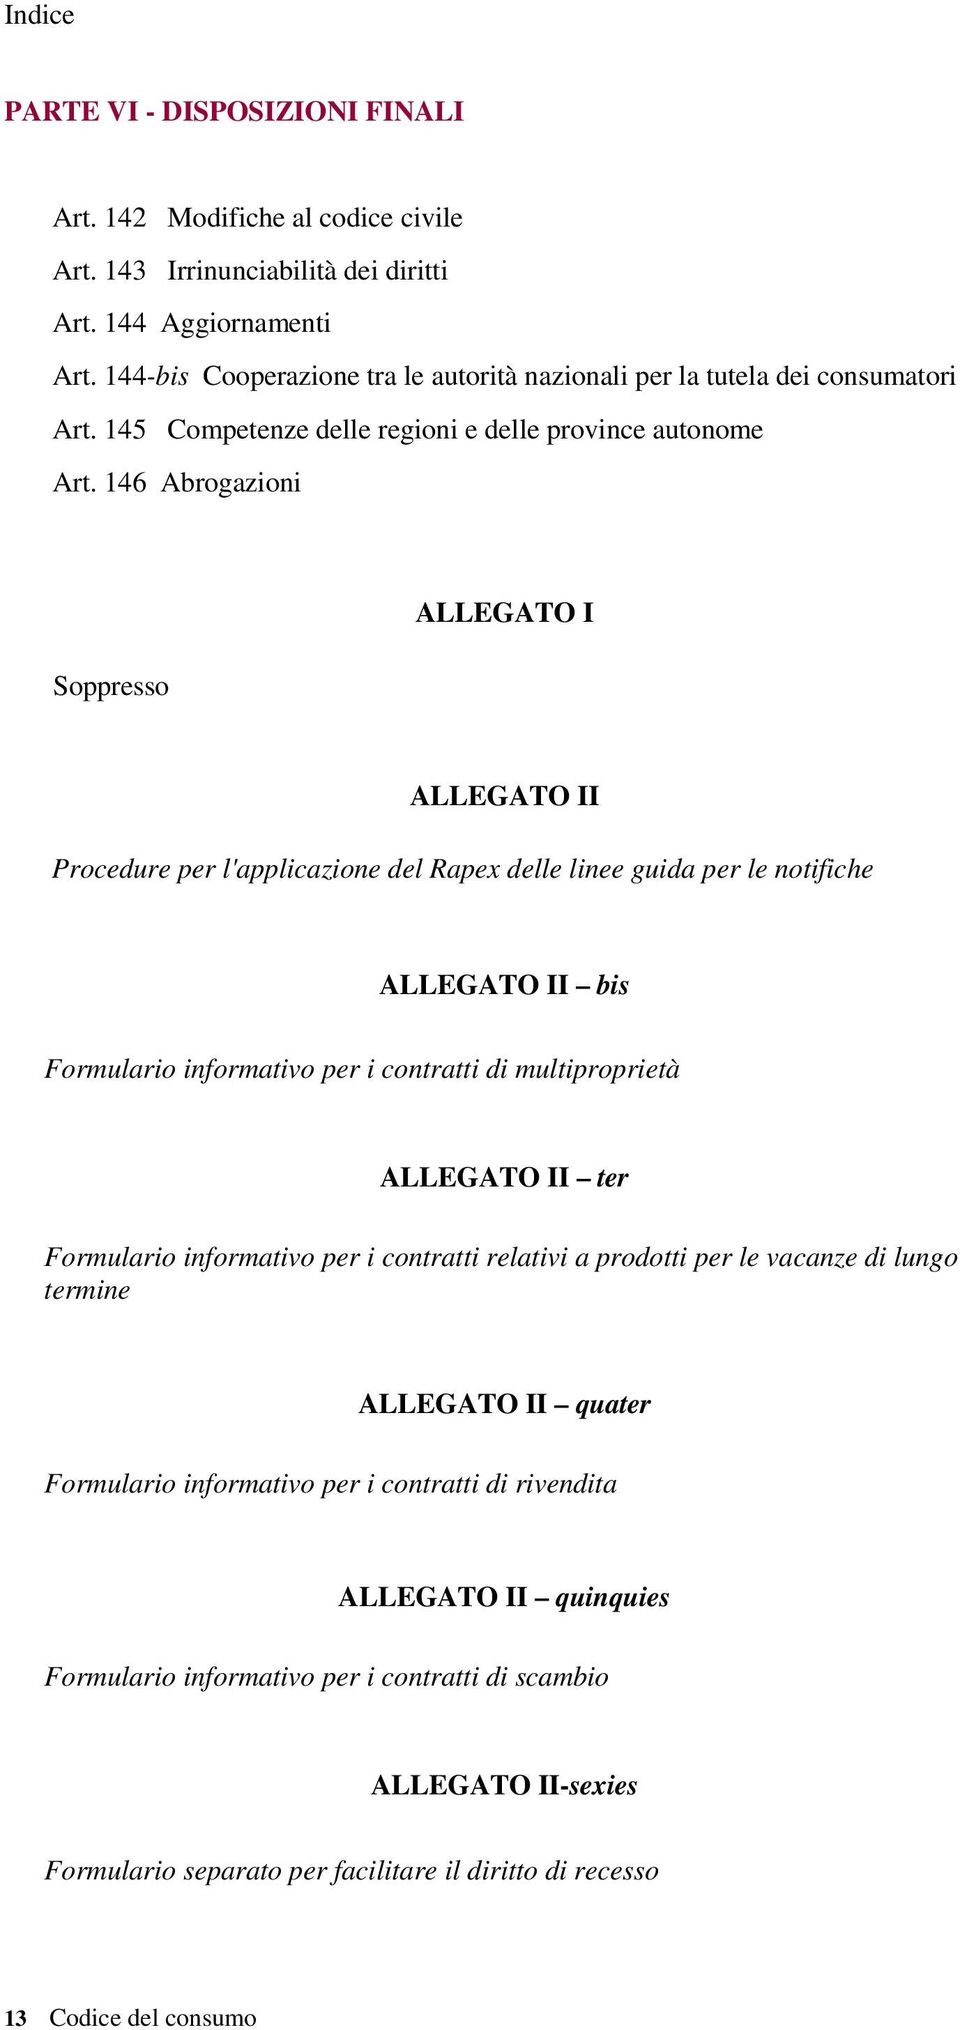 146 Abrogazioni Soppresso ALLEGATO I ALLEGATO II Procedure per l'applicazione del Rapex delle linee guida per le notifiche ALLEGATO II bis Formulario informativo per i contratti di multiproprietà